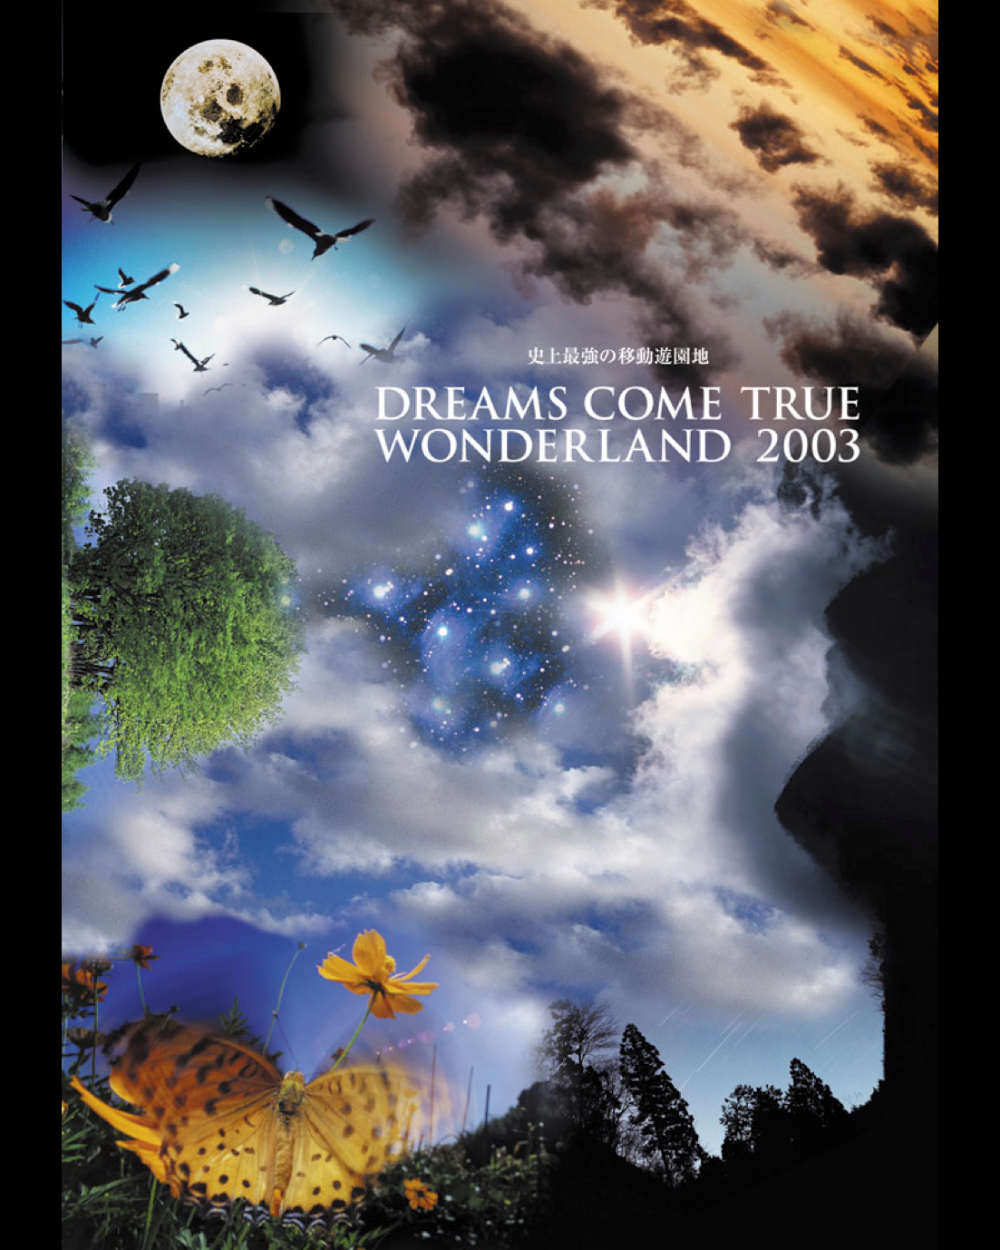 DREAMS COME TRUE【DVD】史上最強の移動遊園地 DREAMS COME TRUE WONDERLAND 2003 (通常盤)